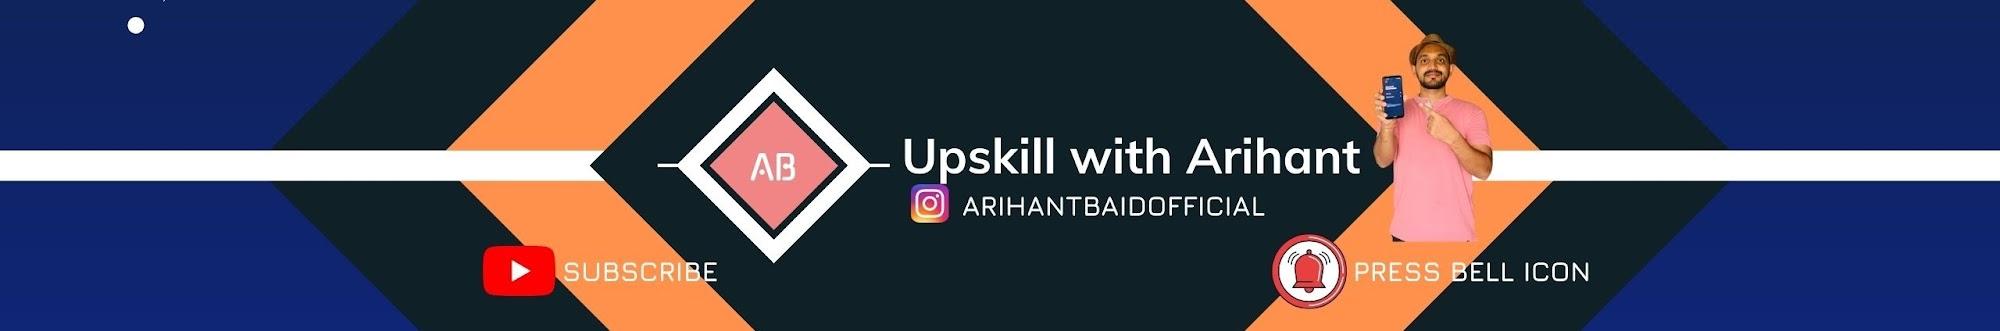 Upskill with Arihant 